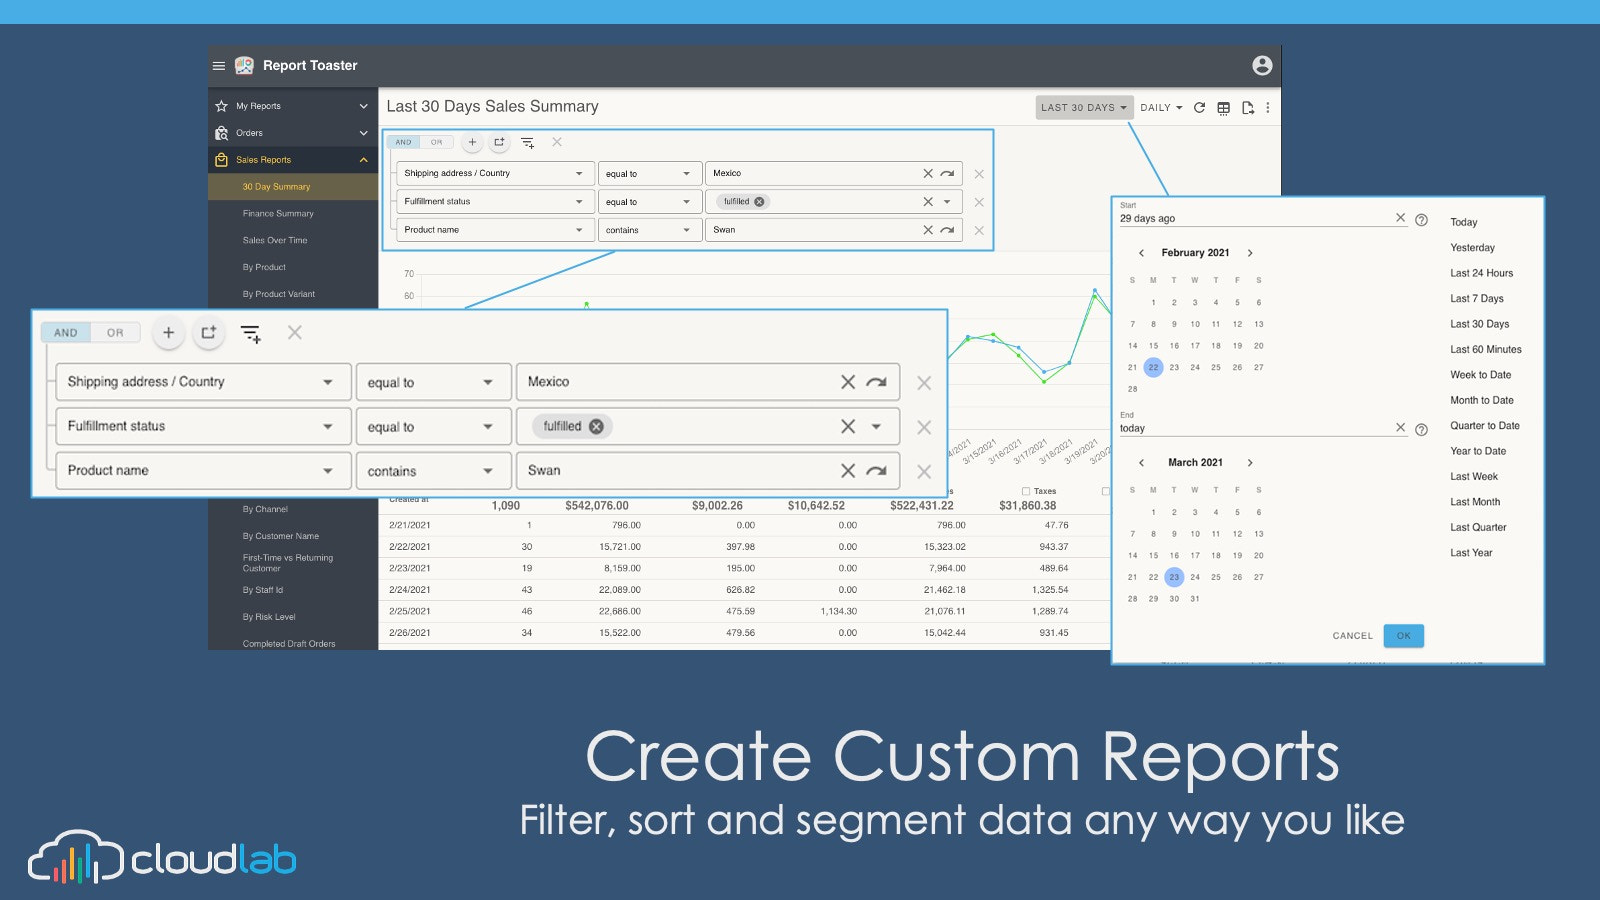 Crie relatórios personalizados filtrando, classificando e segmentando dados